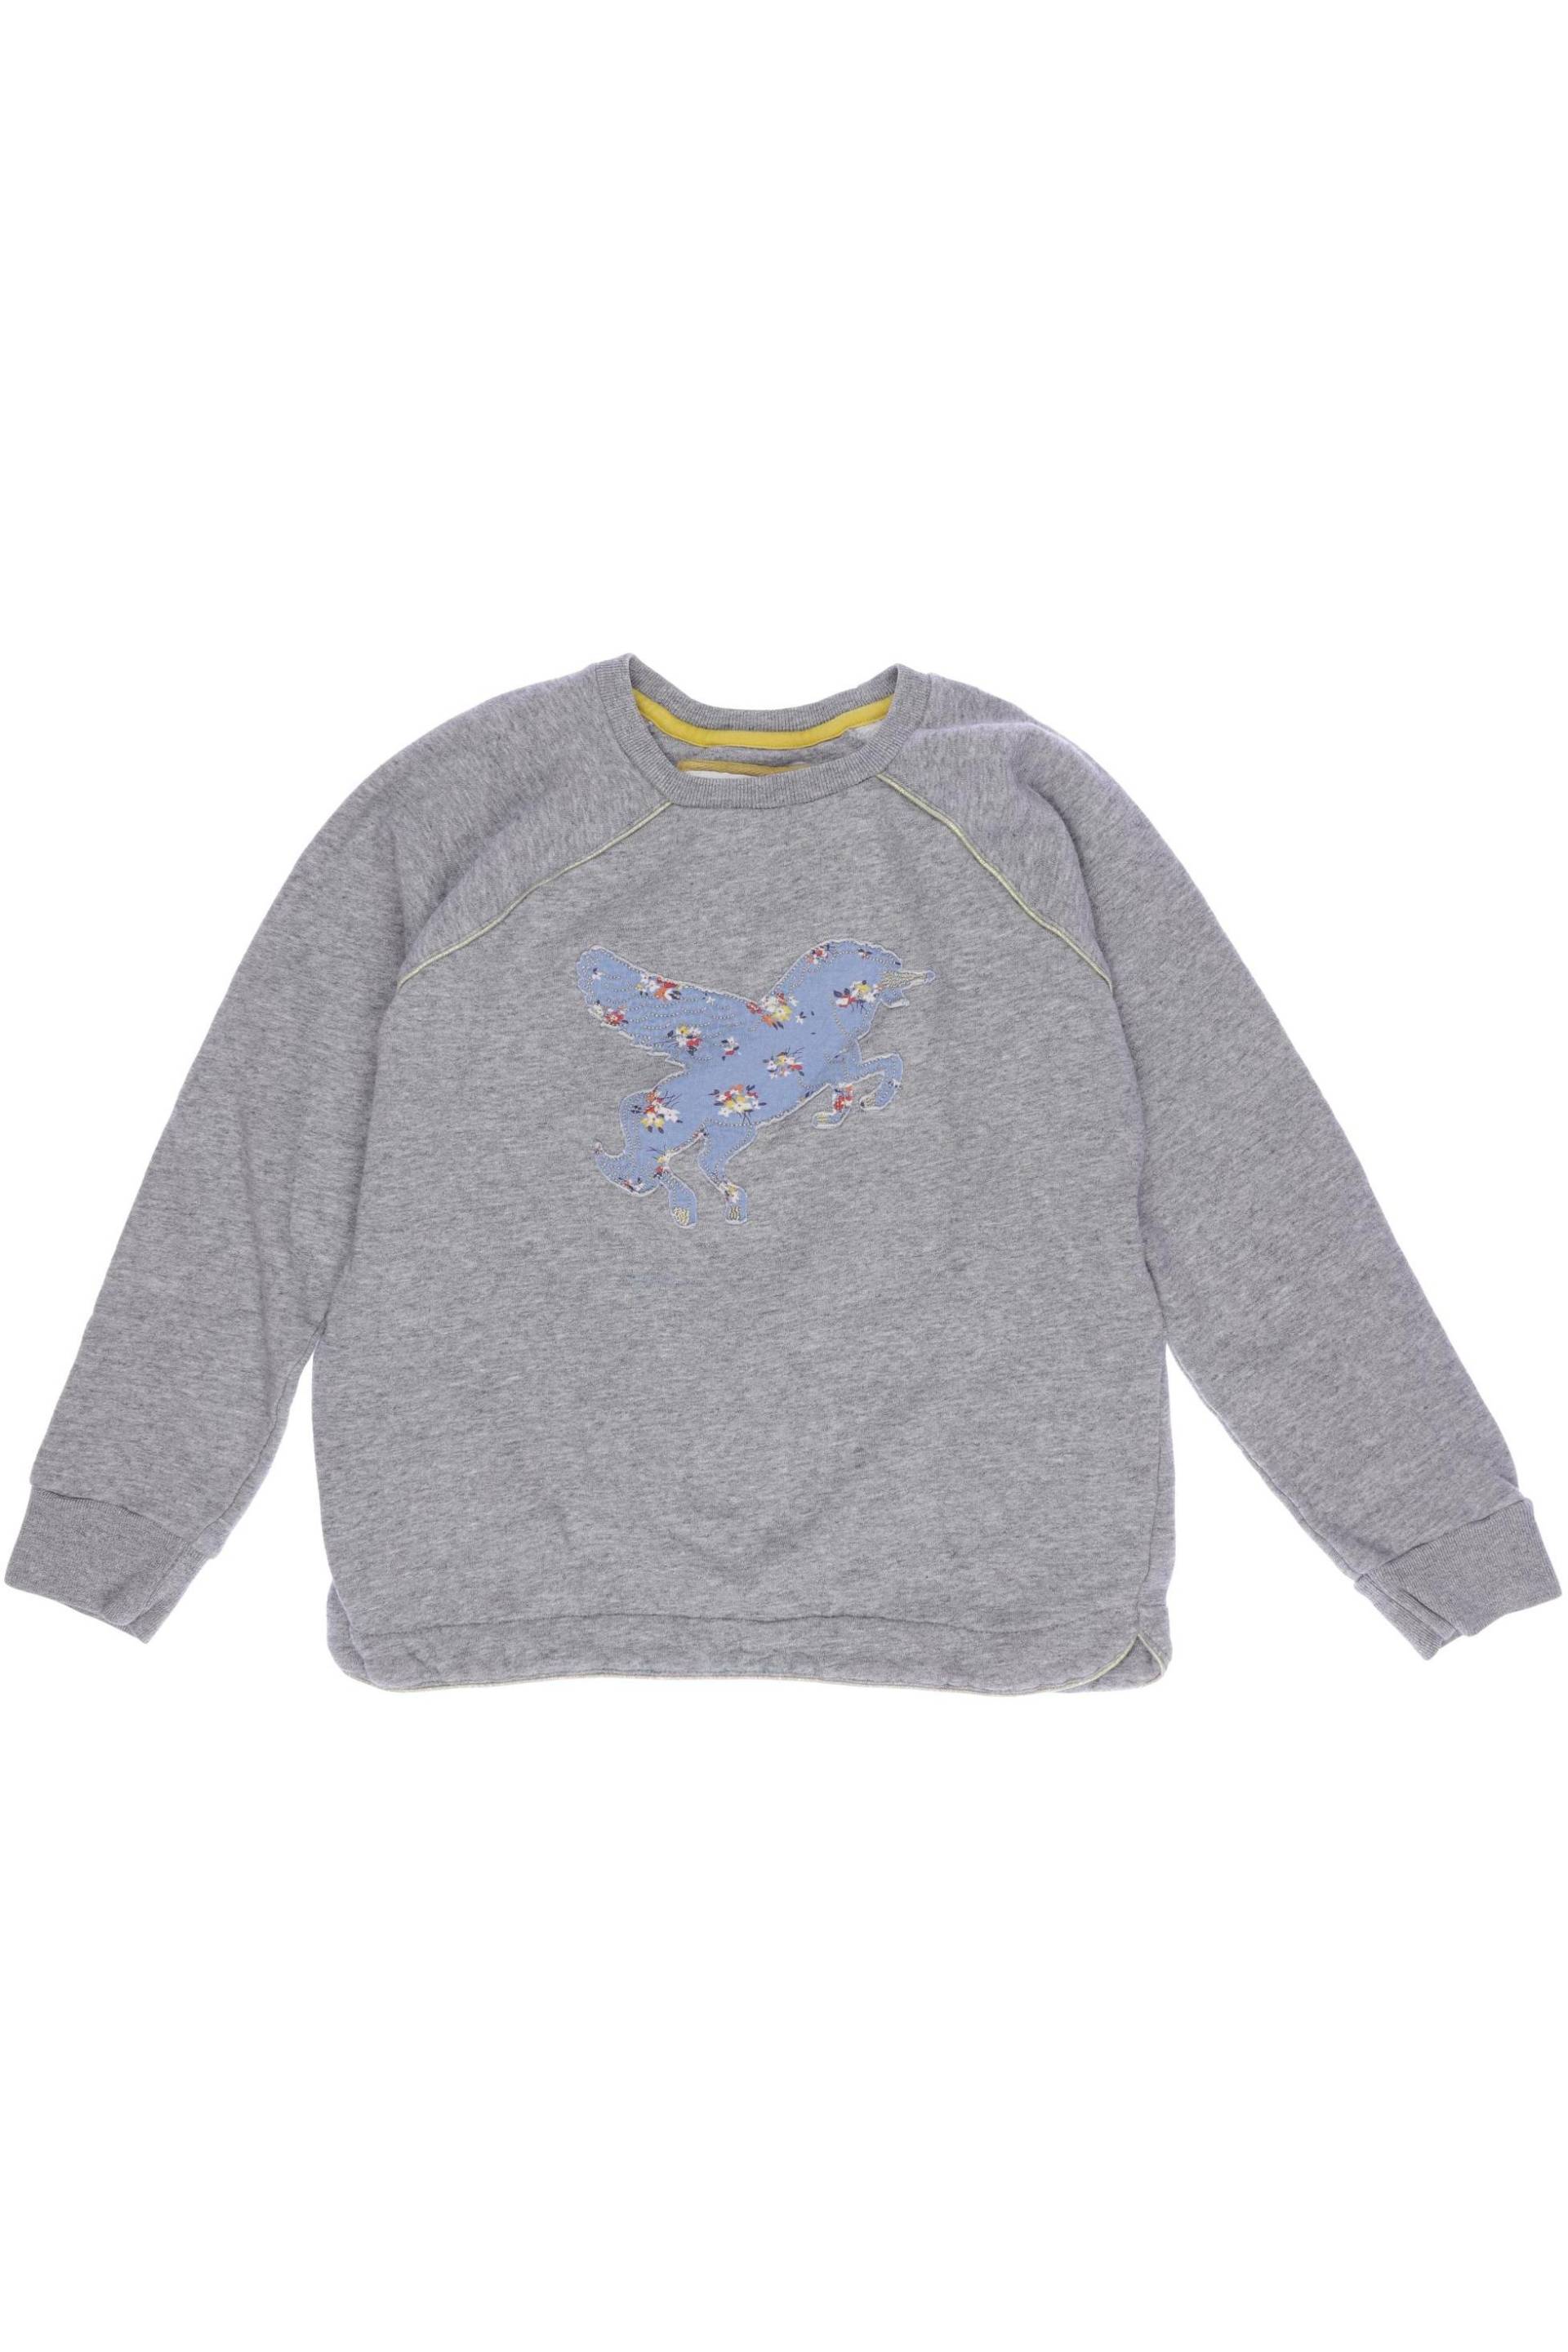 Mini Boden Mädchen Hoodies & Sweater, grau von Mini Boden